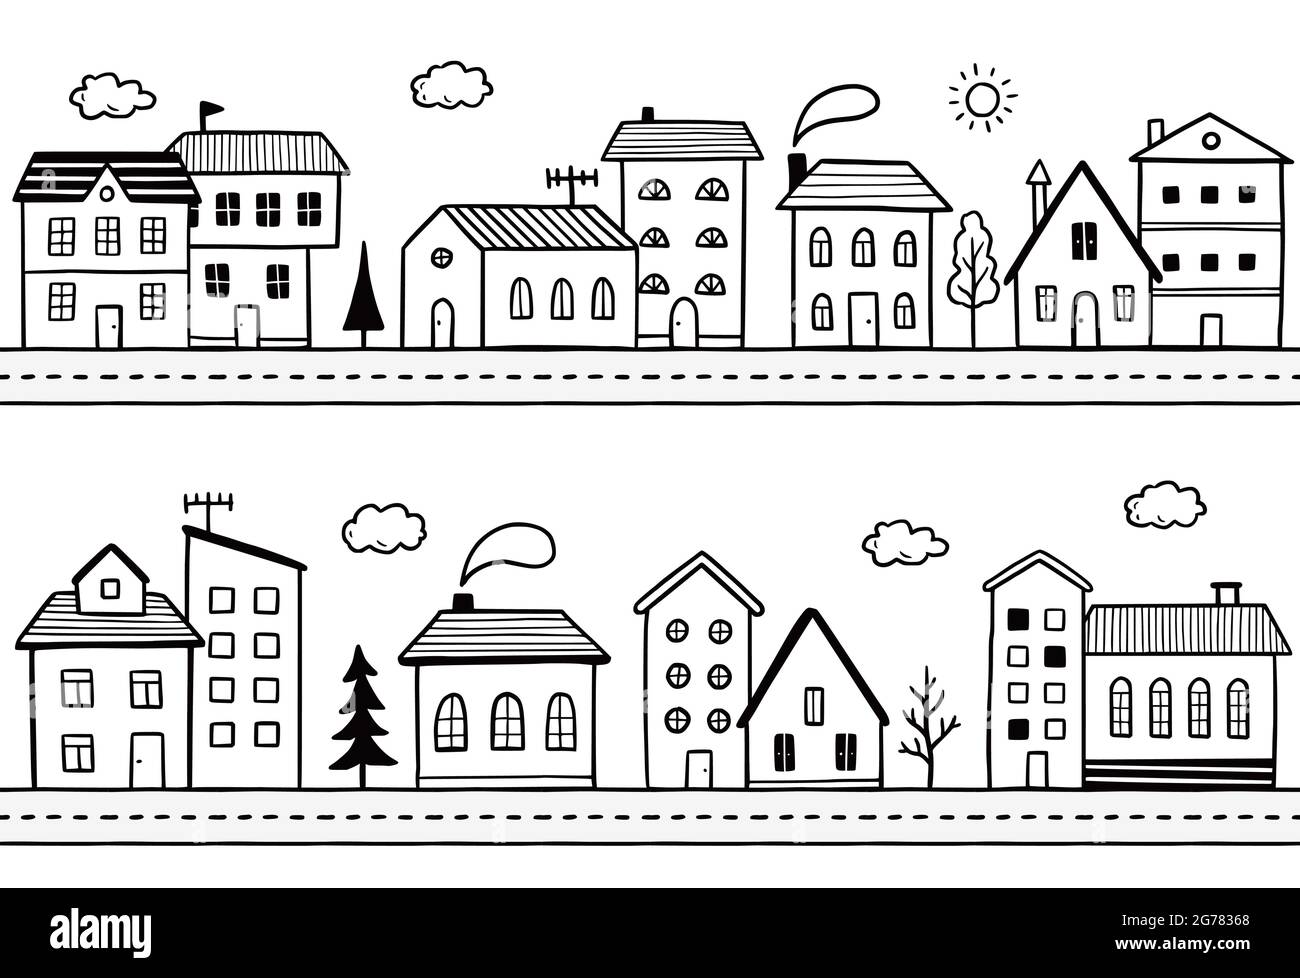 Doodle City Street avec maison. Style d'esquisse dessiné à la main. Maison avec toit. Illustration vectorielle pour village, motif de ville, arrière-plan. Illustration de Vecteur